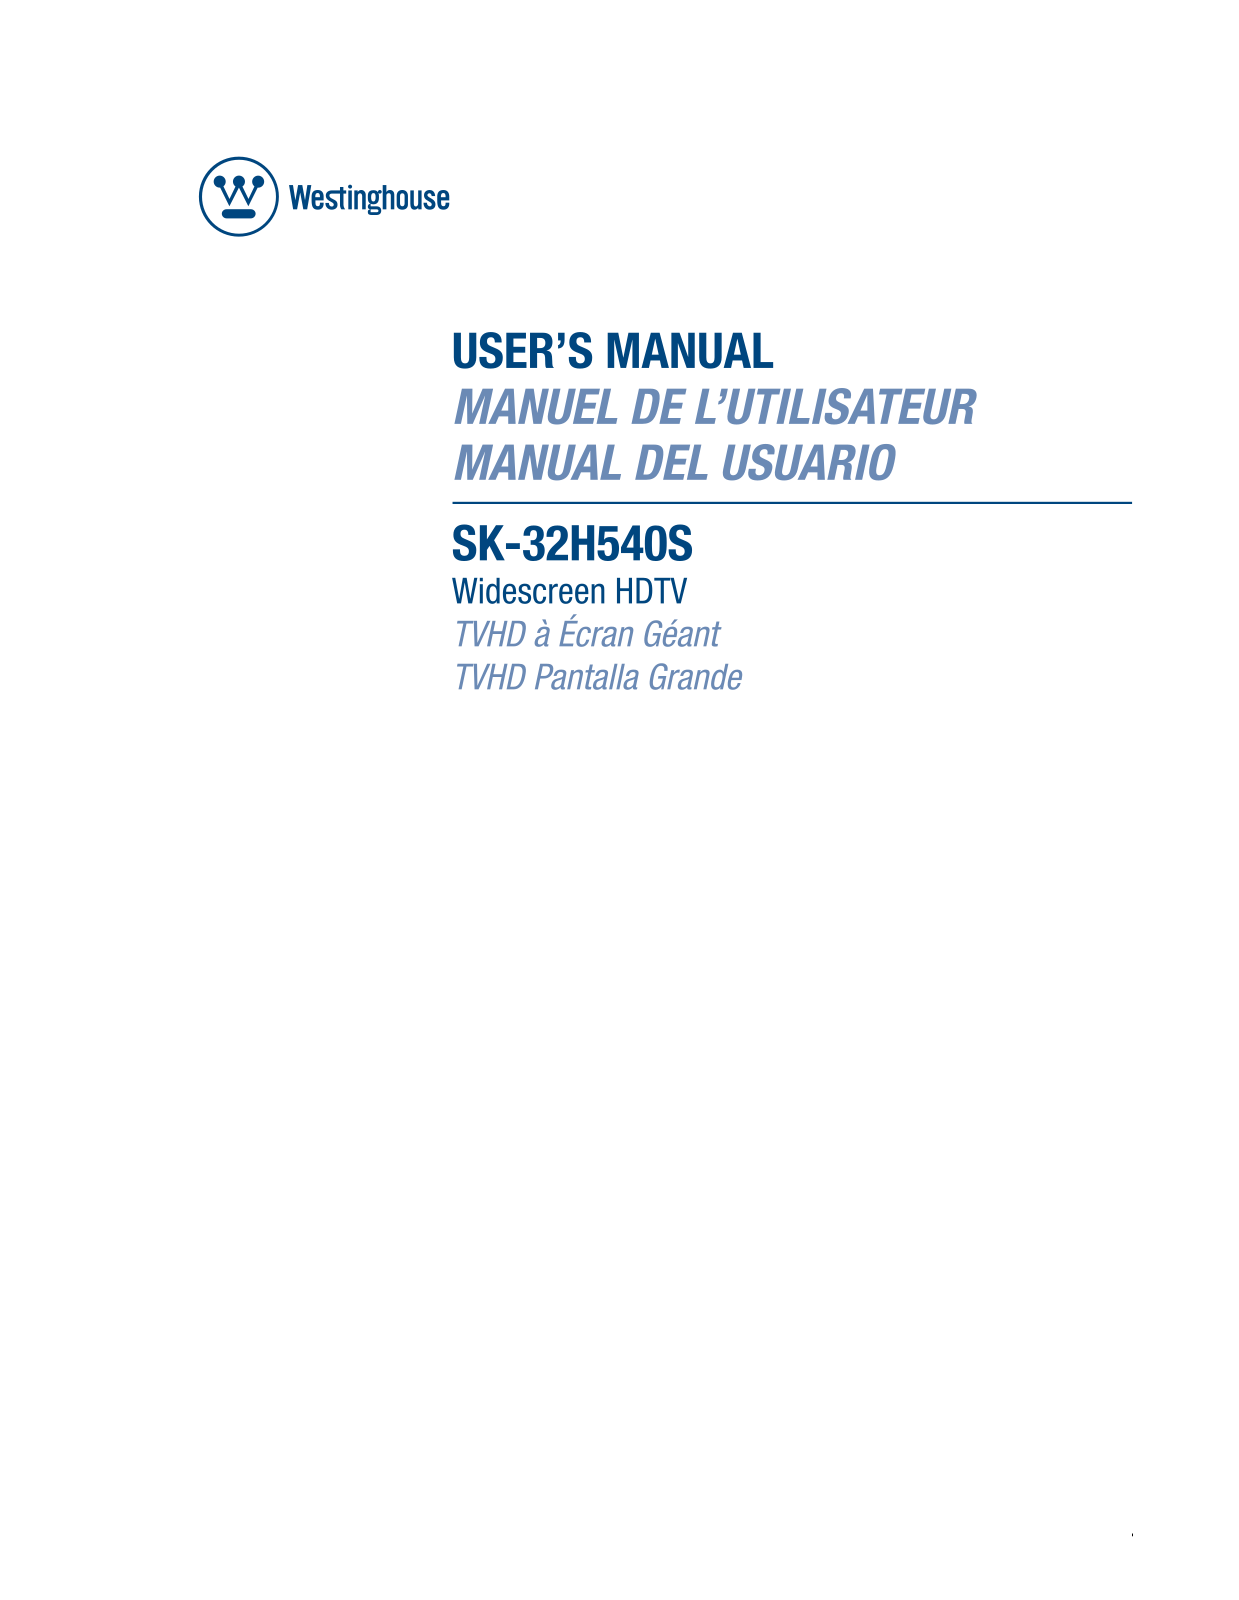 Westinghouse Digital SK-32H540S User Manual